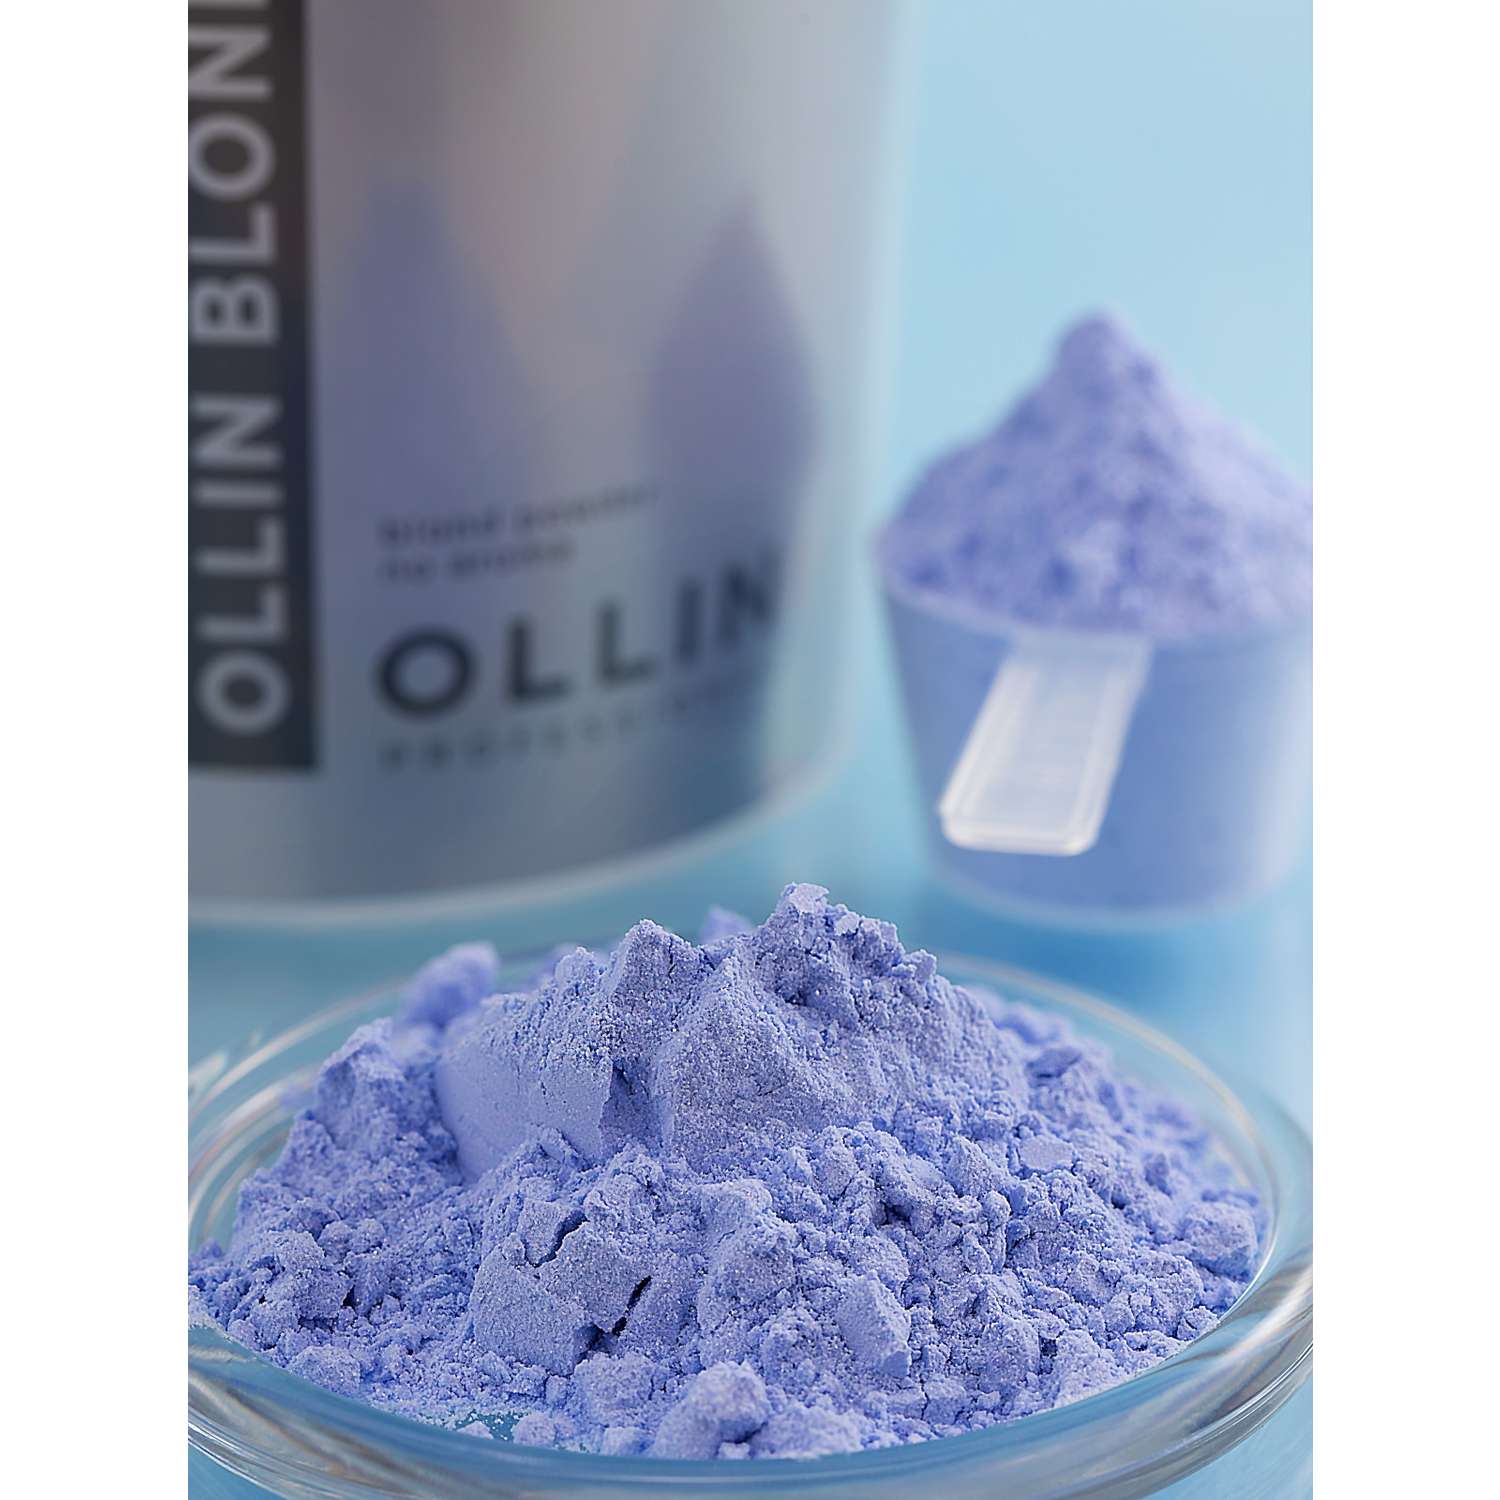 Порошок Ollin OLLIN BLOND для осветления волос 500 г - фото 4